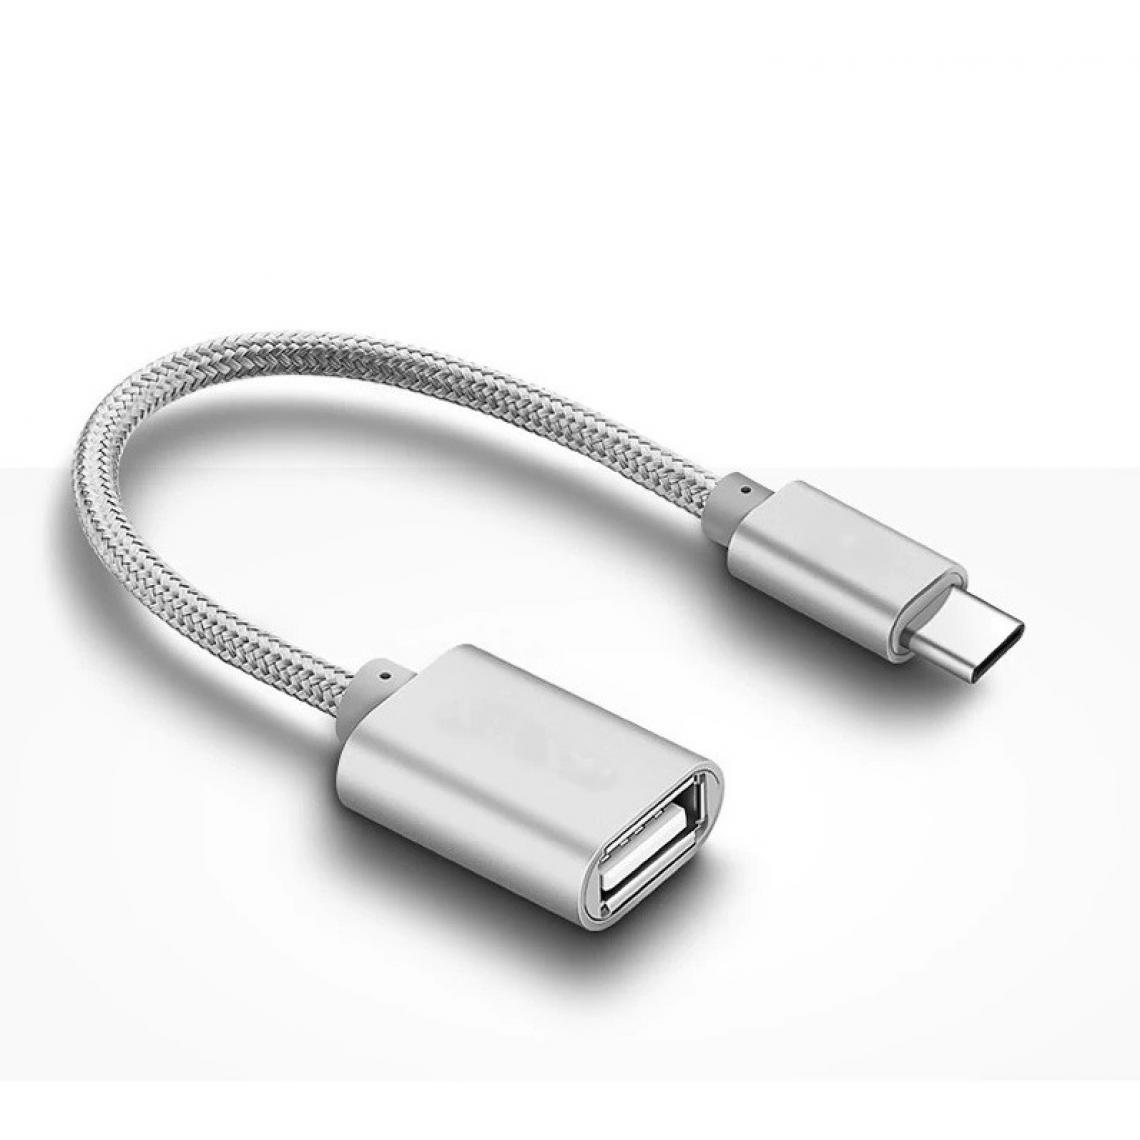 Shot - Adaptateur Type C/USB pour HUAWEI P20 PRO Smartphone & MAC USB-C Clef (ARGENT) - Autres accessoires smartphone